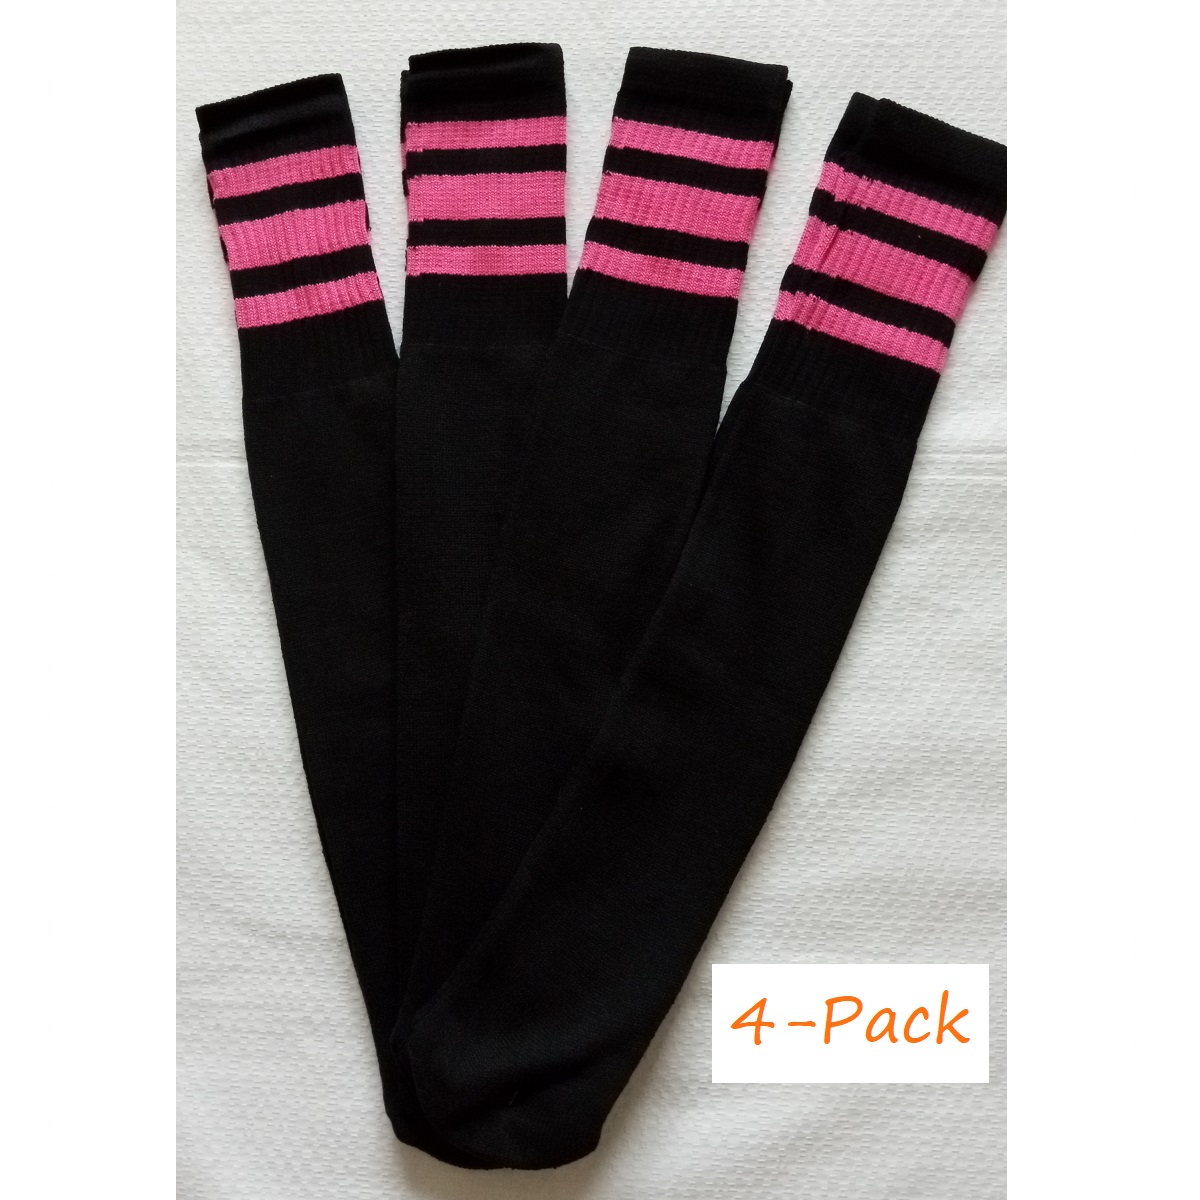 Baseball Socks Softball Striped Tube Socks Cotton Game Socks Black & Pink 23